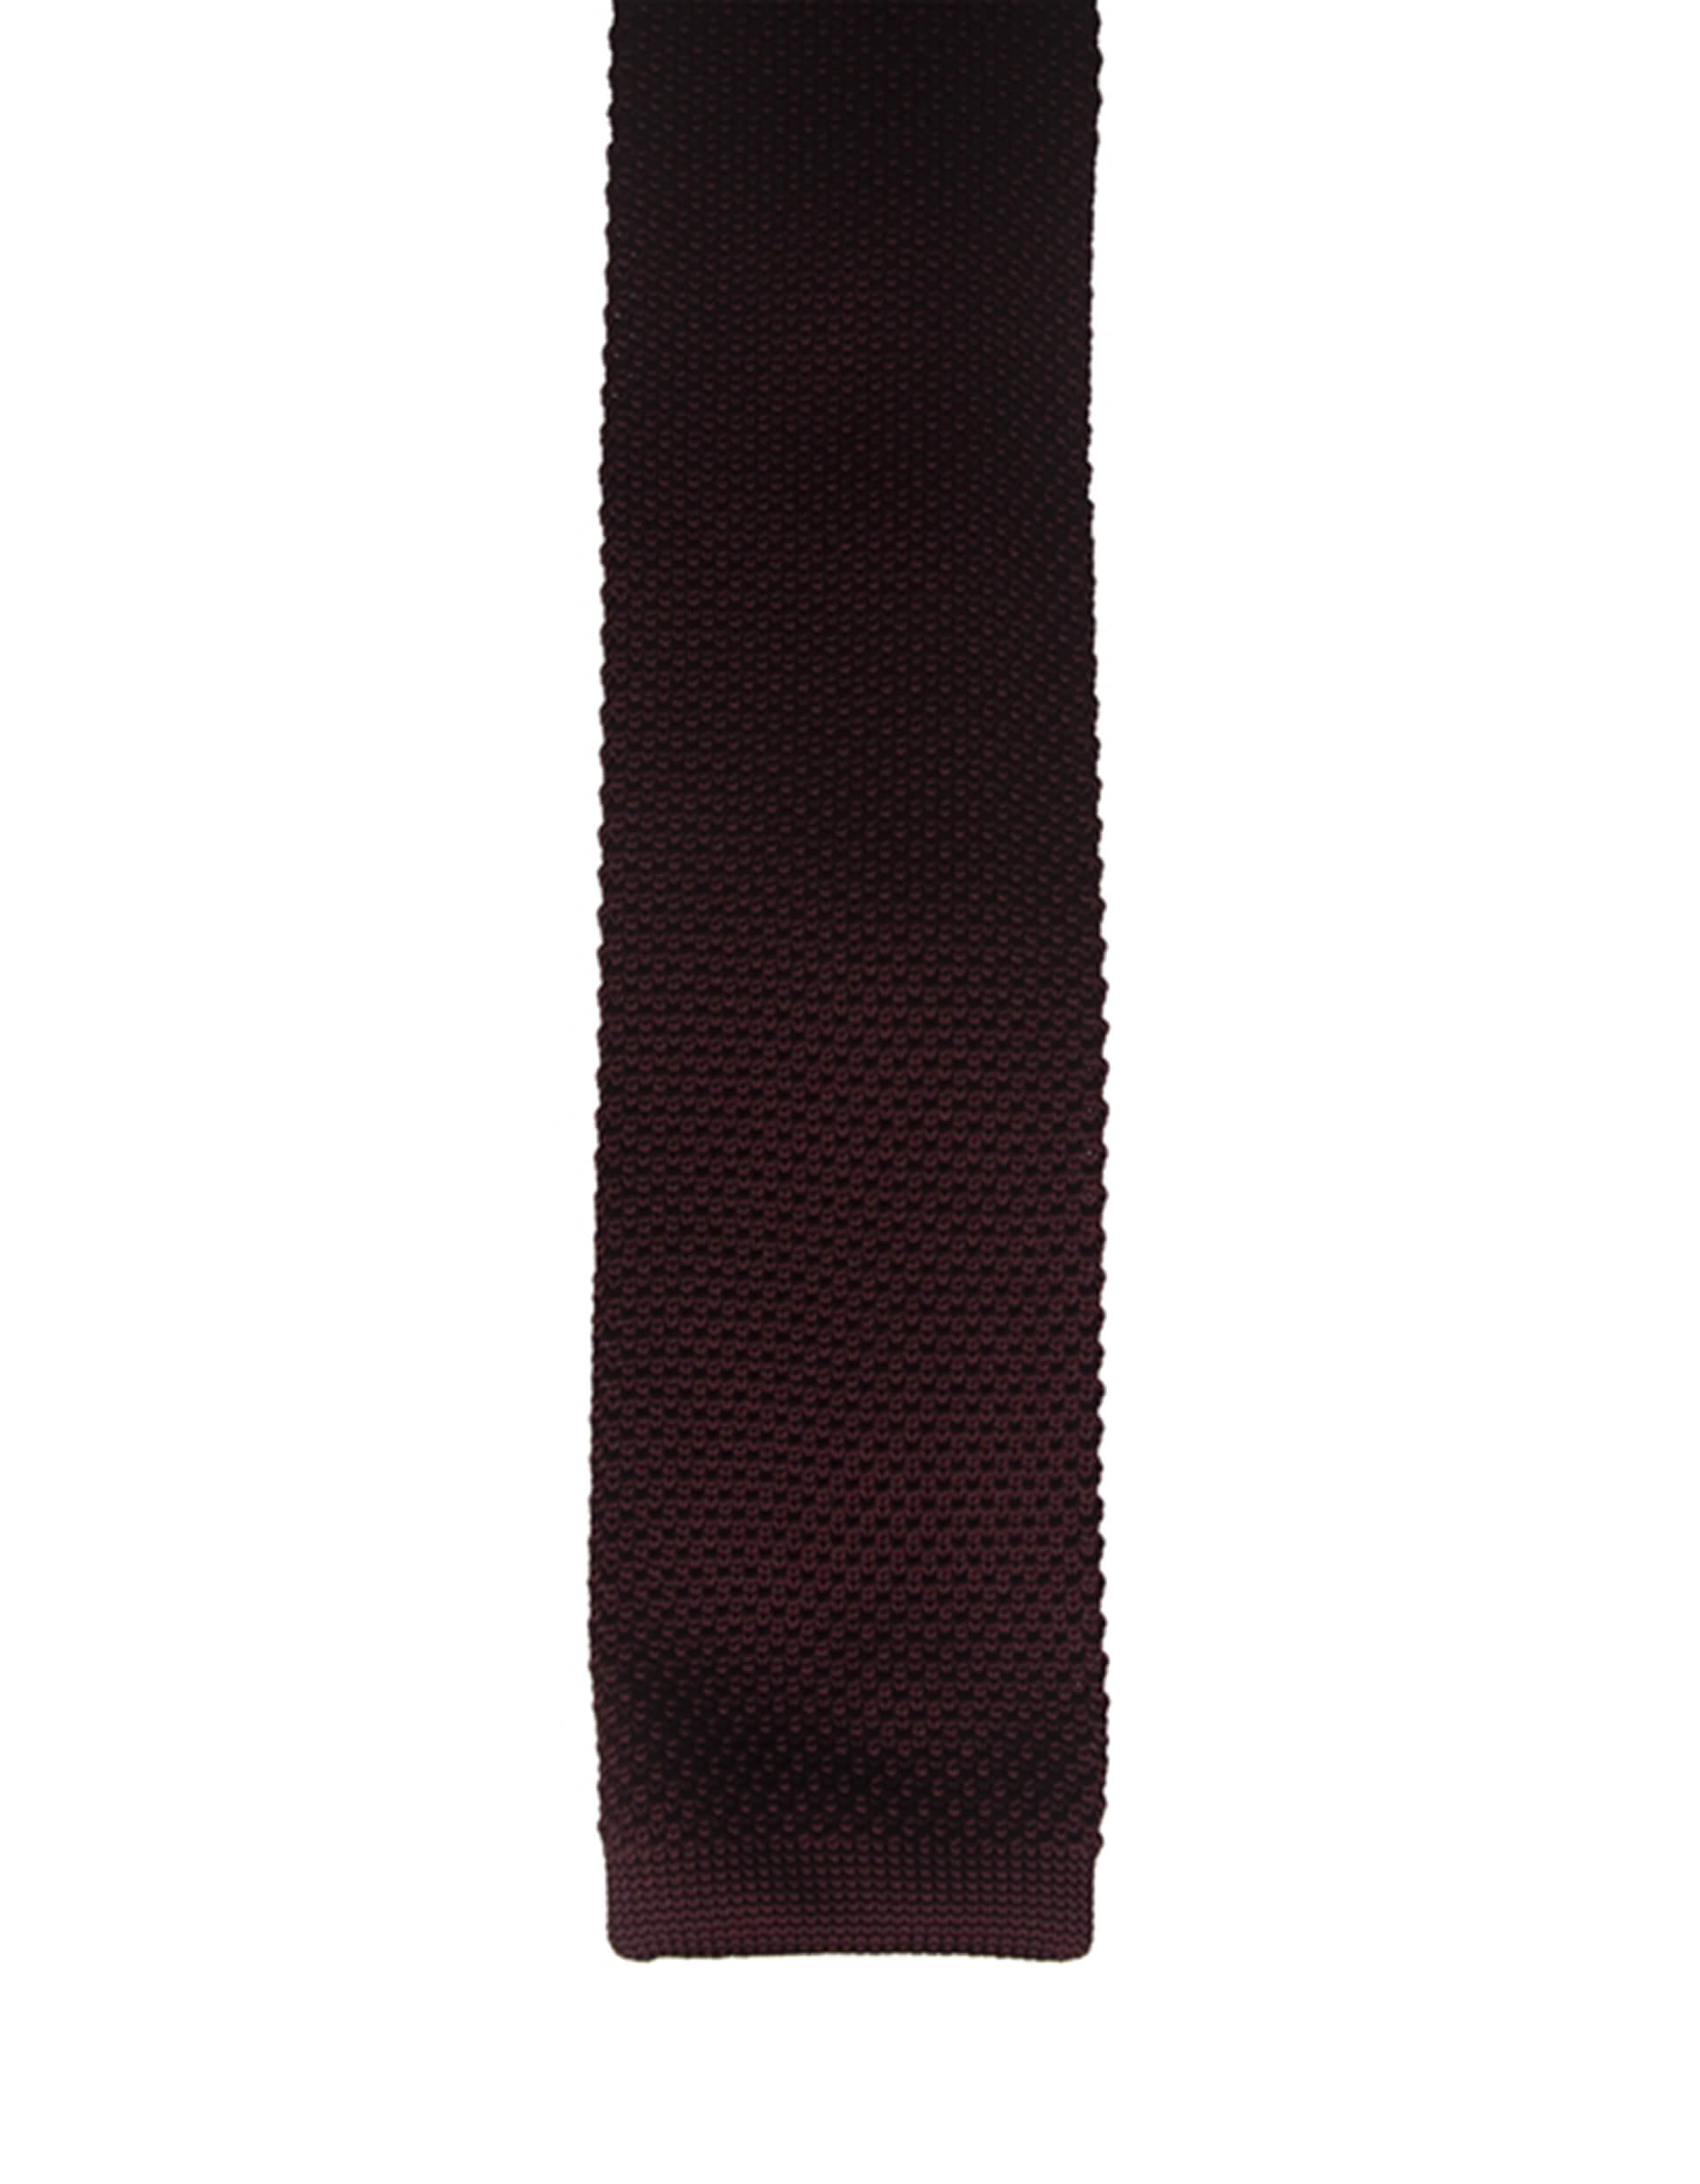 burgundy knitted tie for men